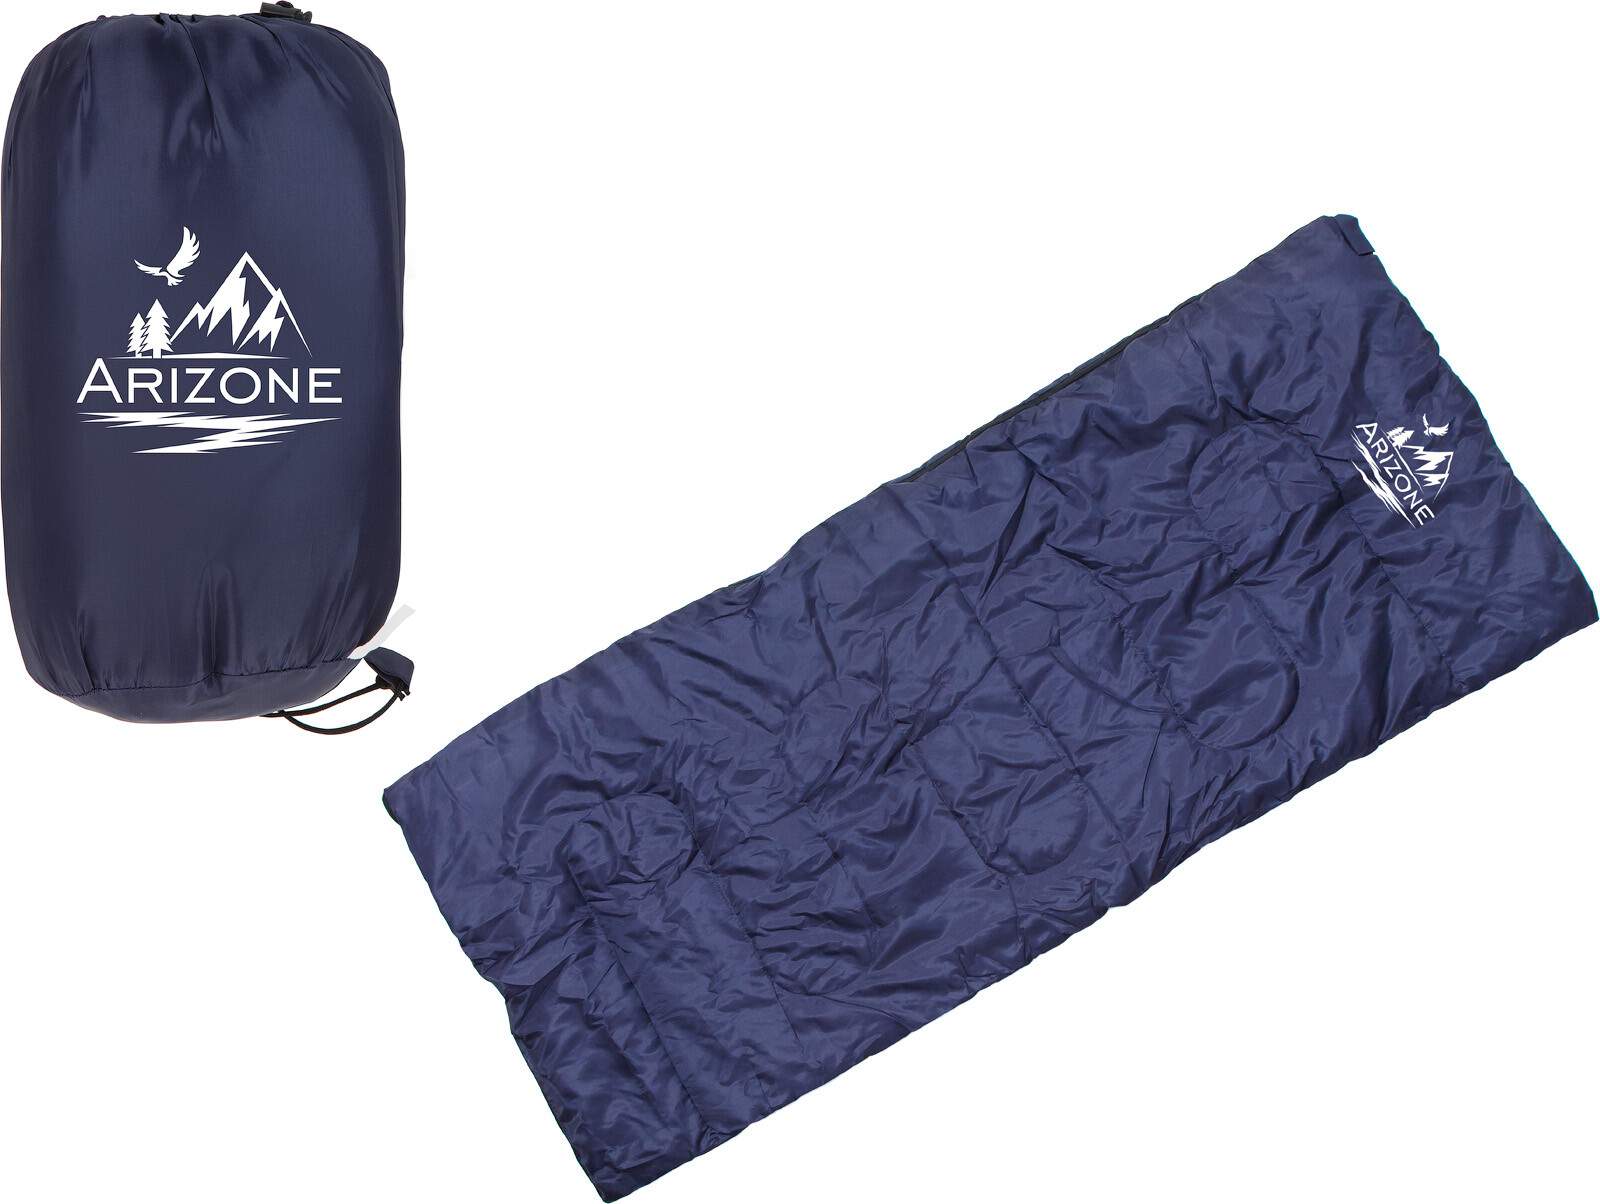 Спальный мешок ARIZONE Chipmunk синий (28-170151) - купить в Москве, цены на Мегамаркет | 600016313630